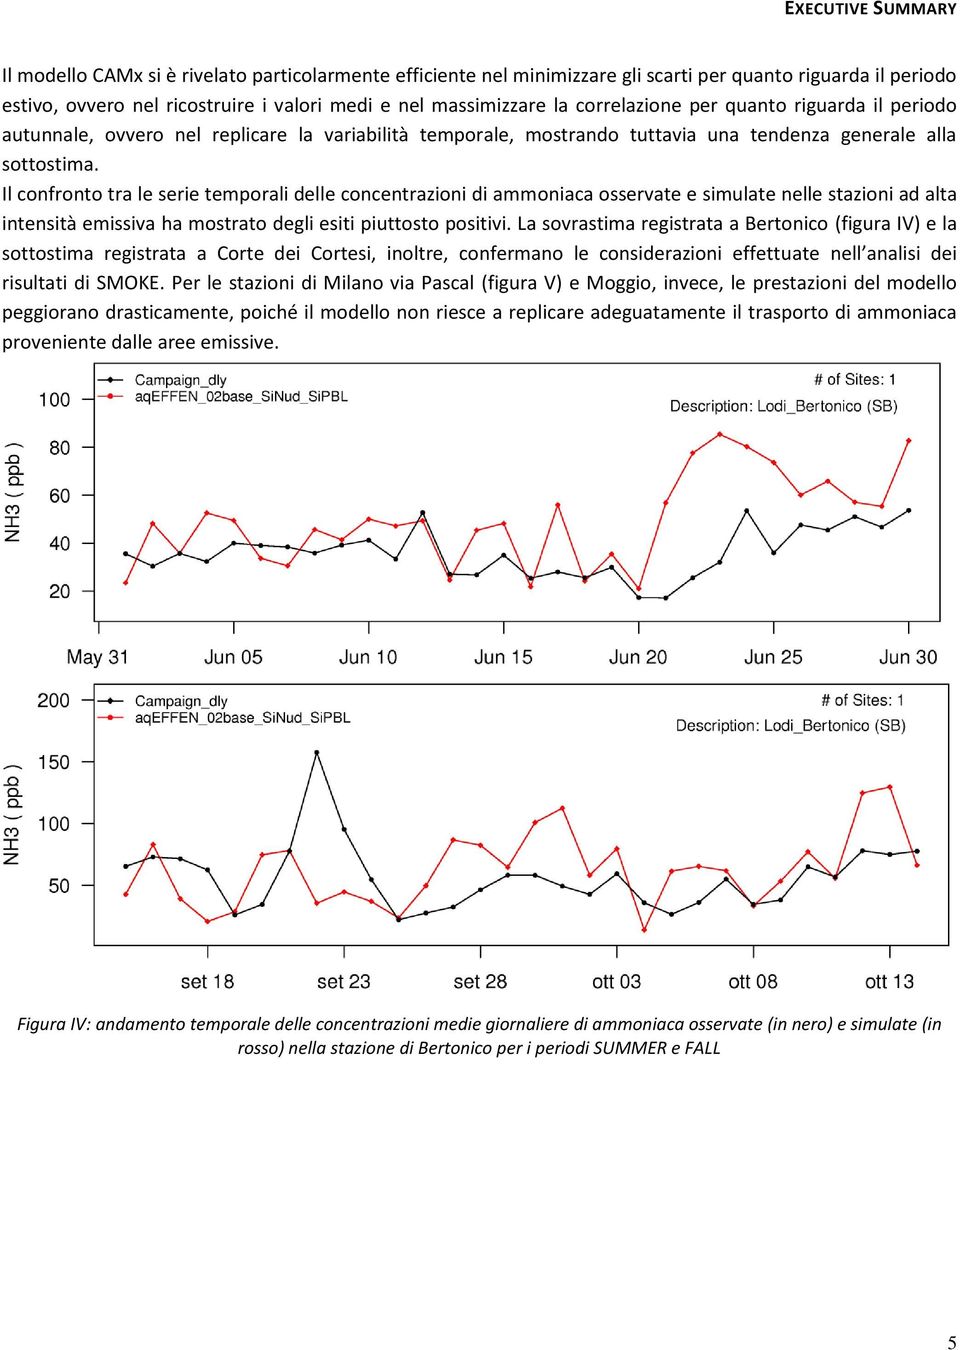 Il confronto tra le serie temporali delle concentrazioni di ammoniaca osservate e simulate nelle stazioni ad alta intensità emissiva ha mostrato degli esiti piuttosto positivi.